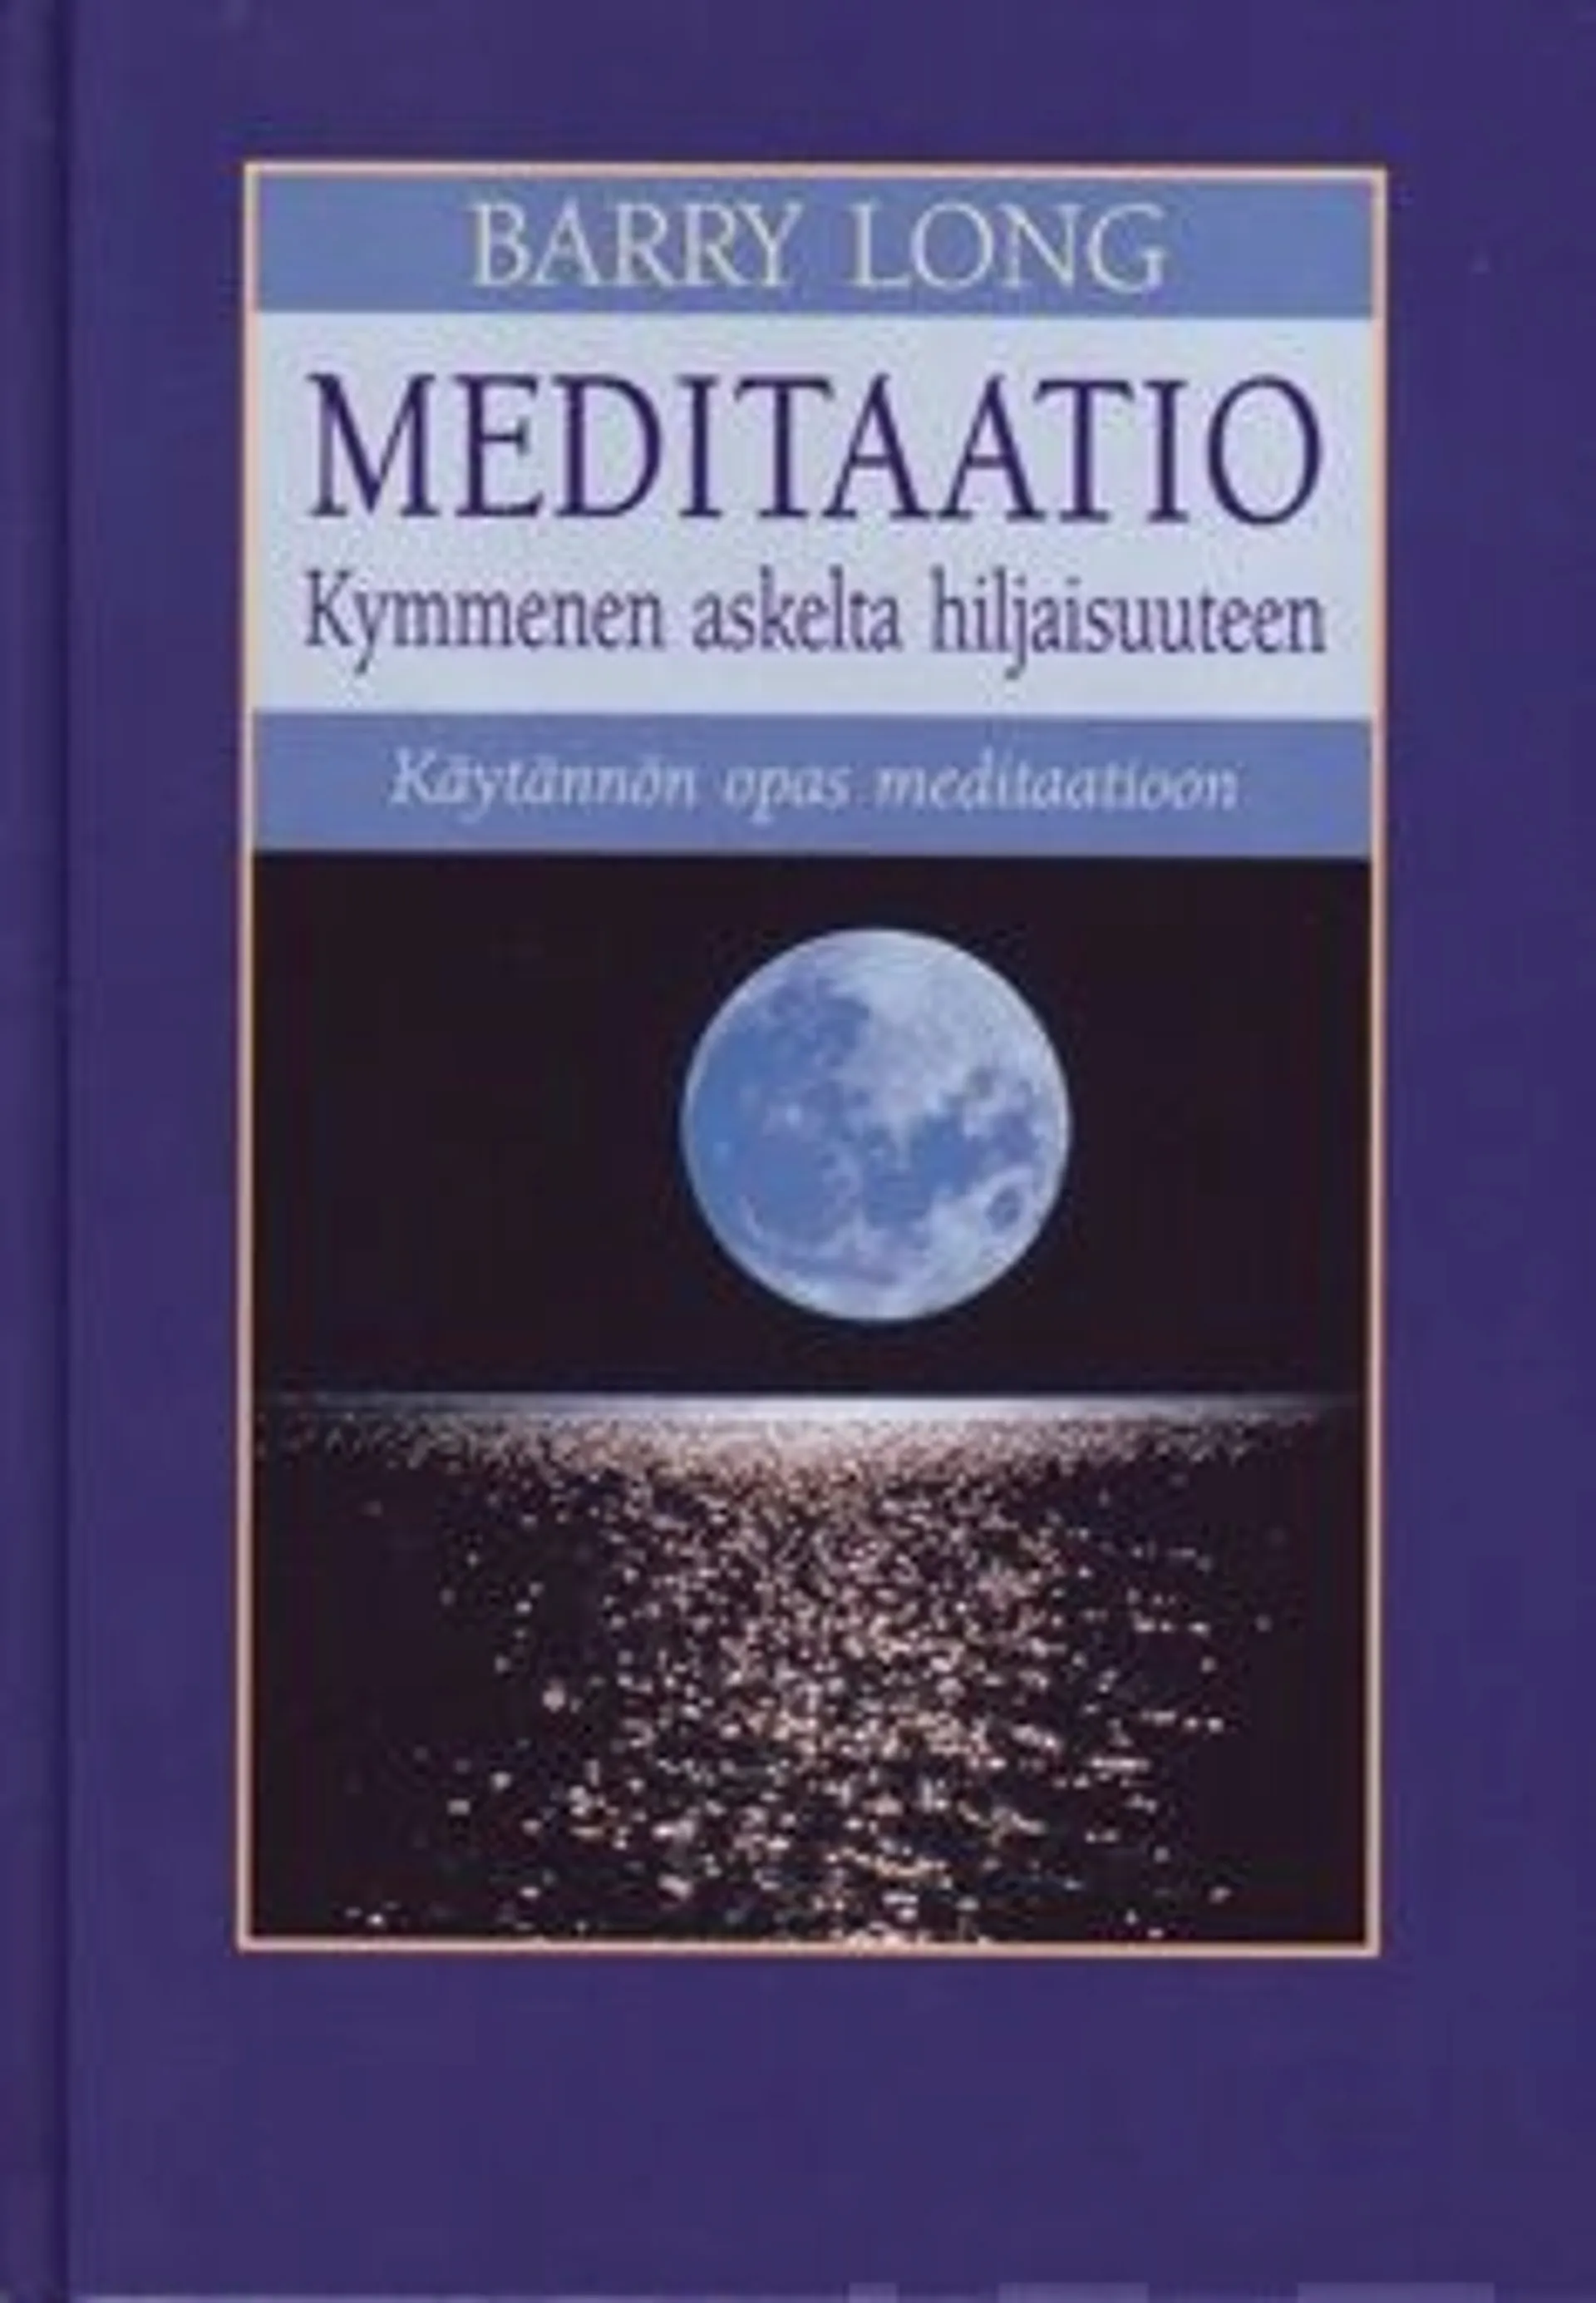 Long, Meditaatio - kymmenen askelta hiljaisuuteen : käytännön opas meditaatioon